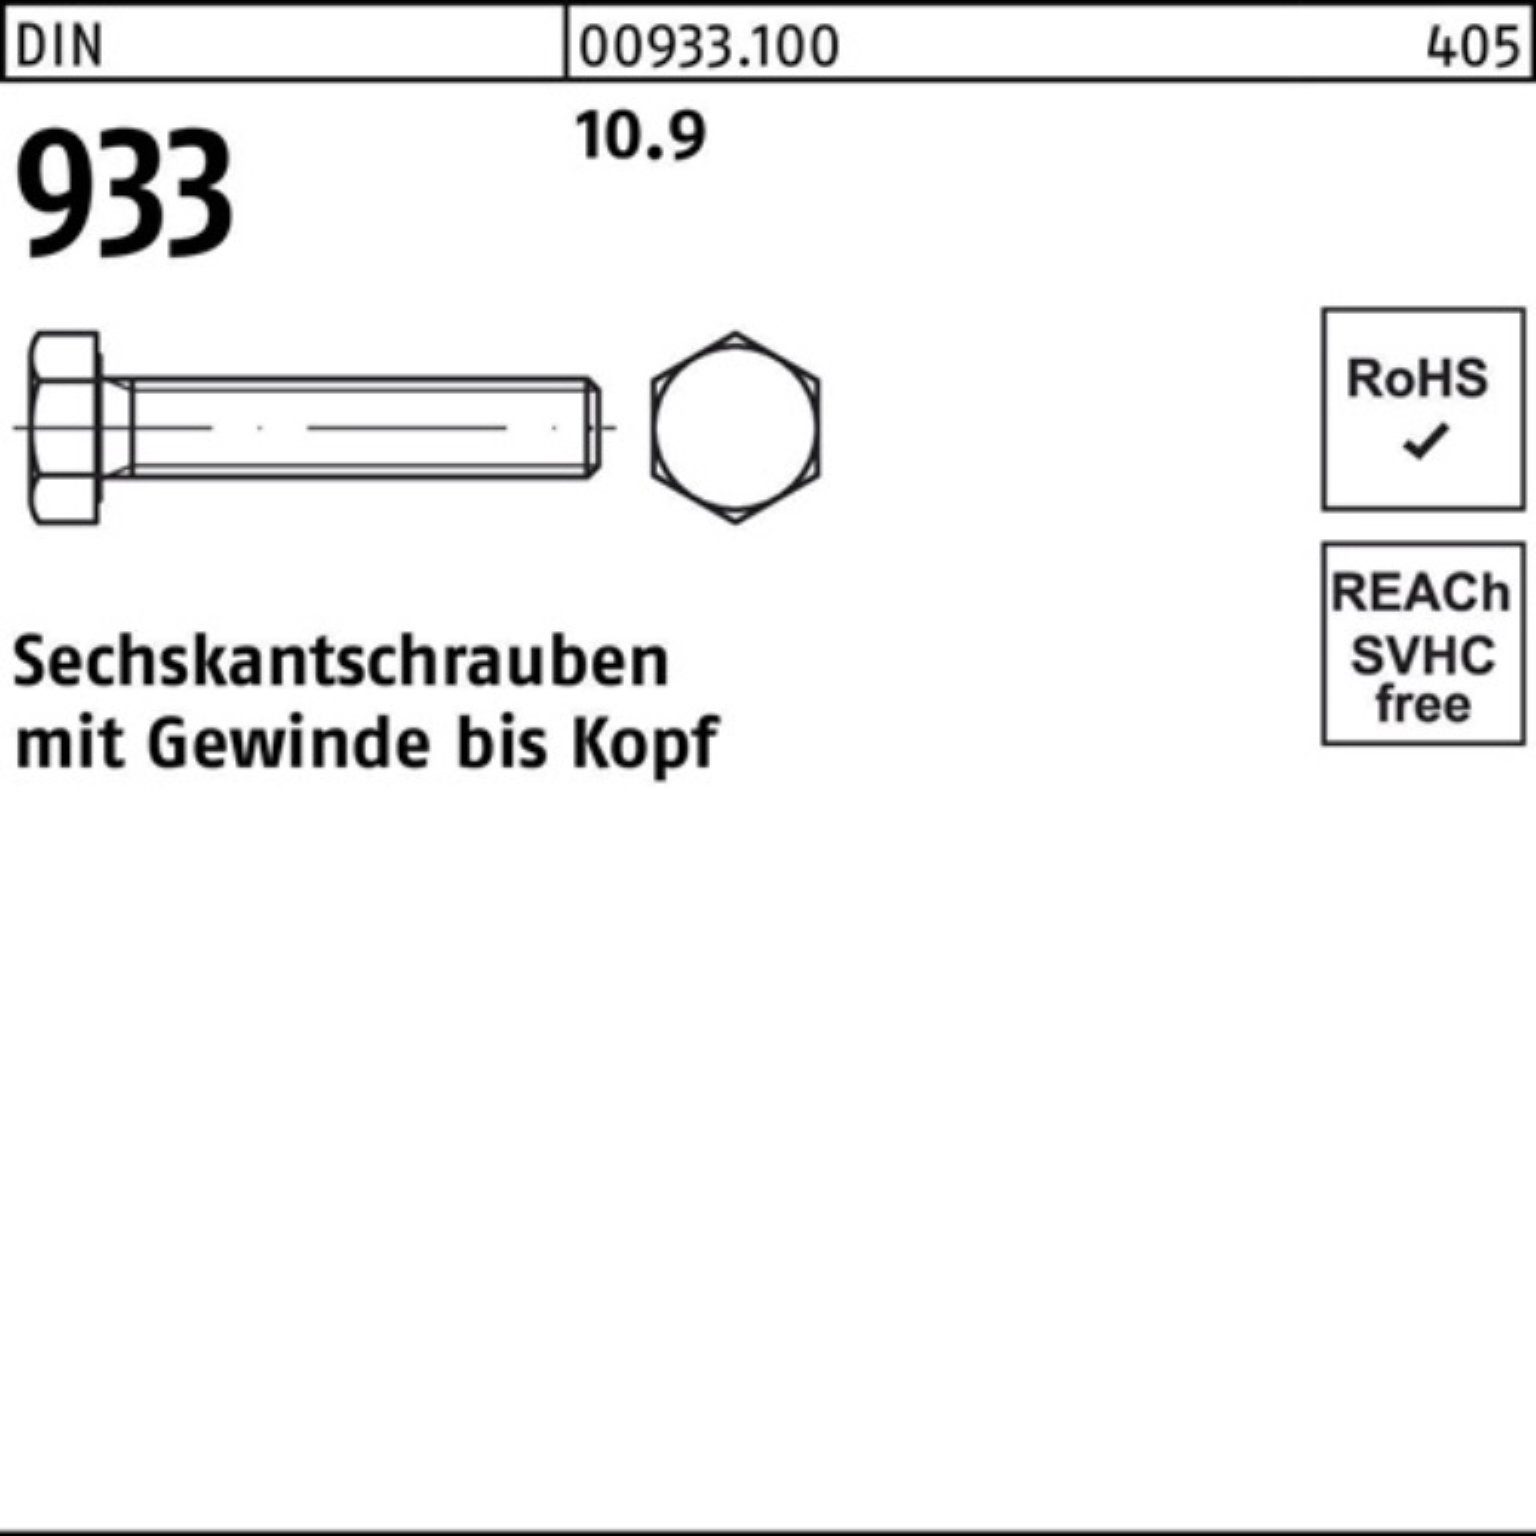 933 180 DIN Stück Sechskantschraube Sechskantschraube VG 10.9 M27x 100er Reyher 1 DIN Pack 933